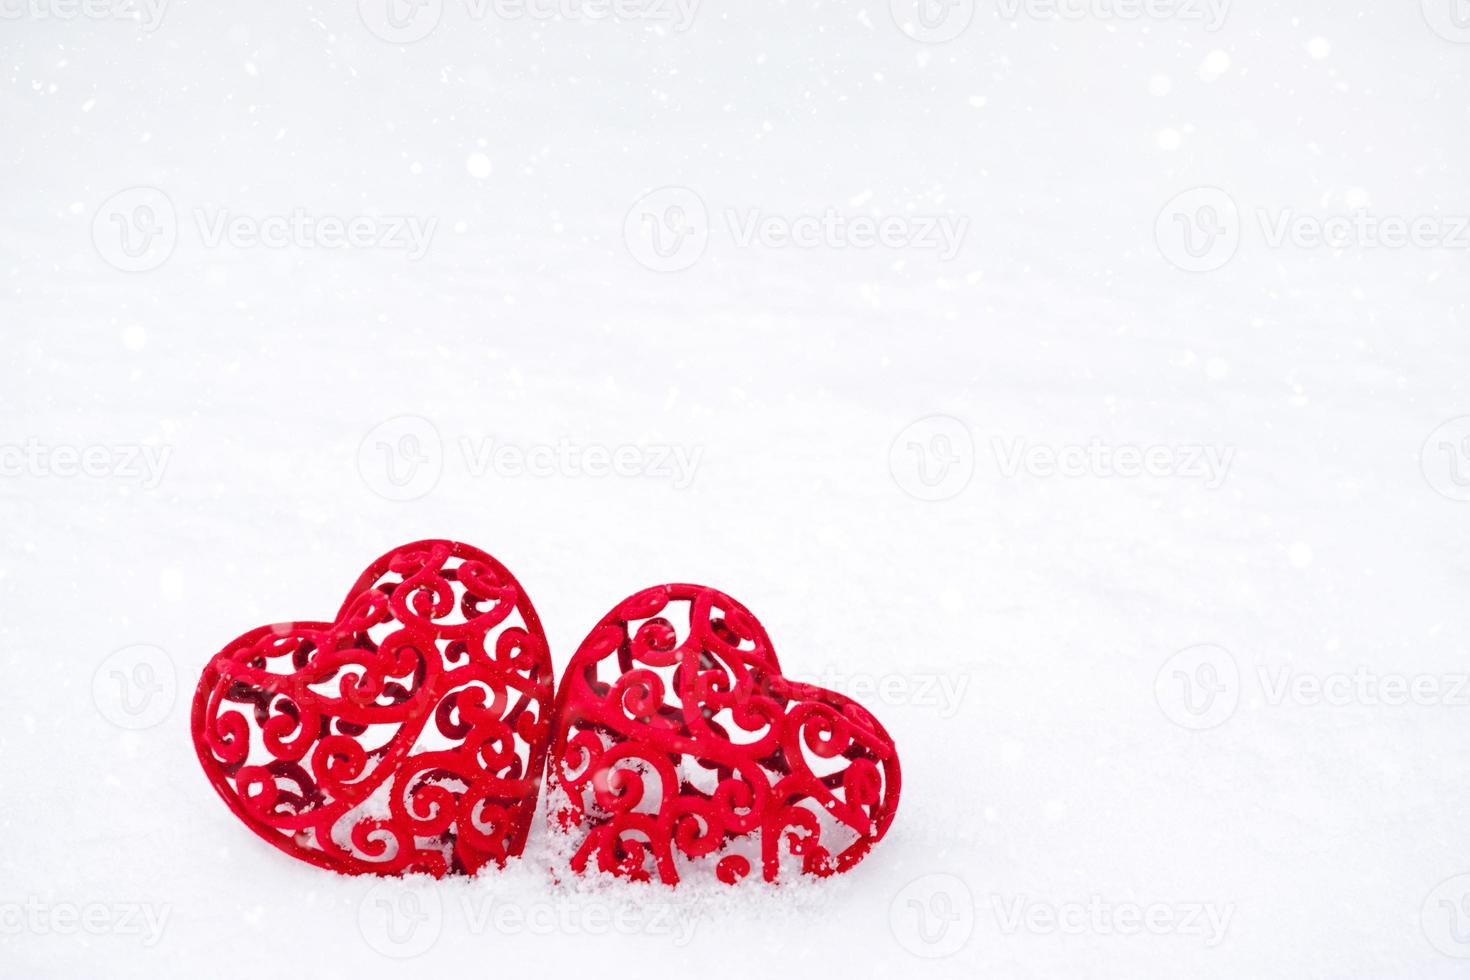 två röda hjärtan i snön - ett gratulationskort för alla hjärtans dag, alla älskares semester den 14 februari. kopieringsutrymme. inbjudan till en dejt, kärlek, dejting foto